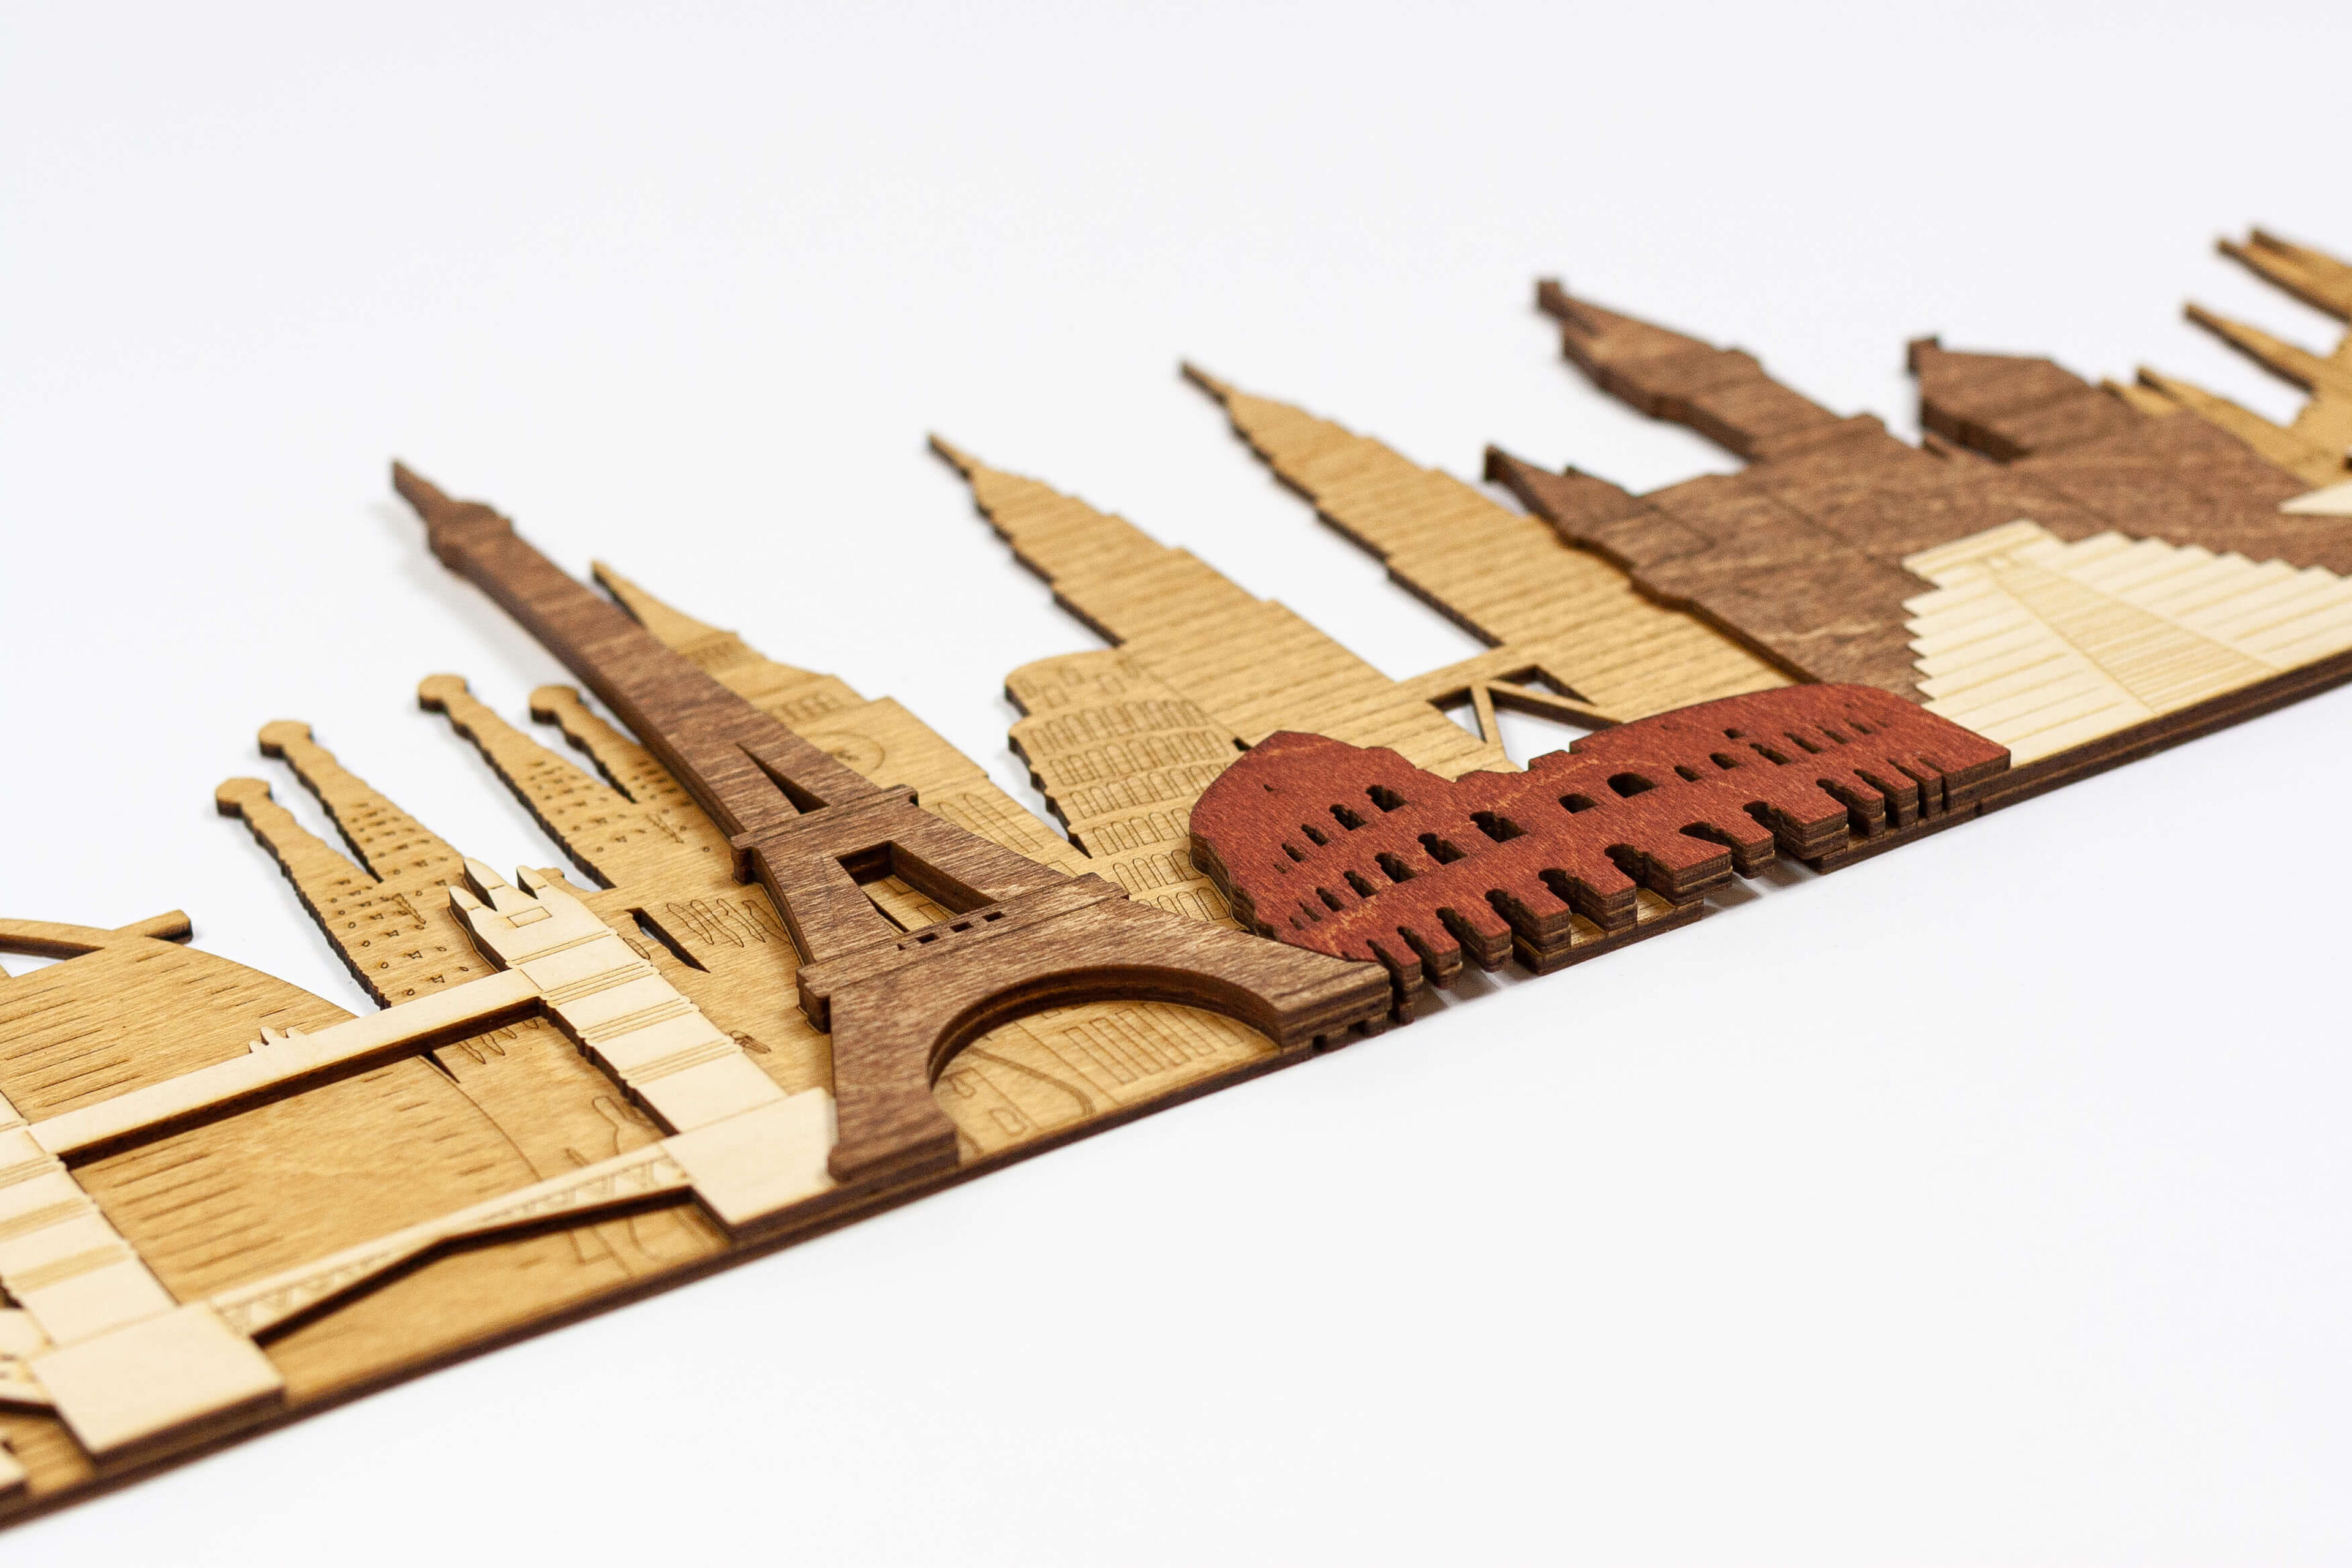 Monumenti e attrazioni mondiali - Pannello in legno 3D